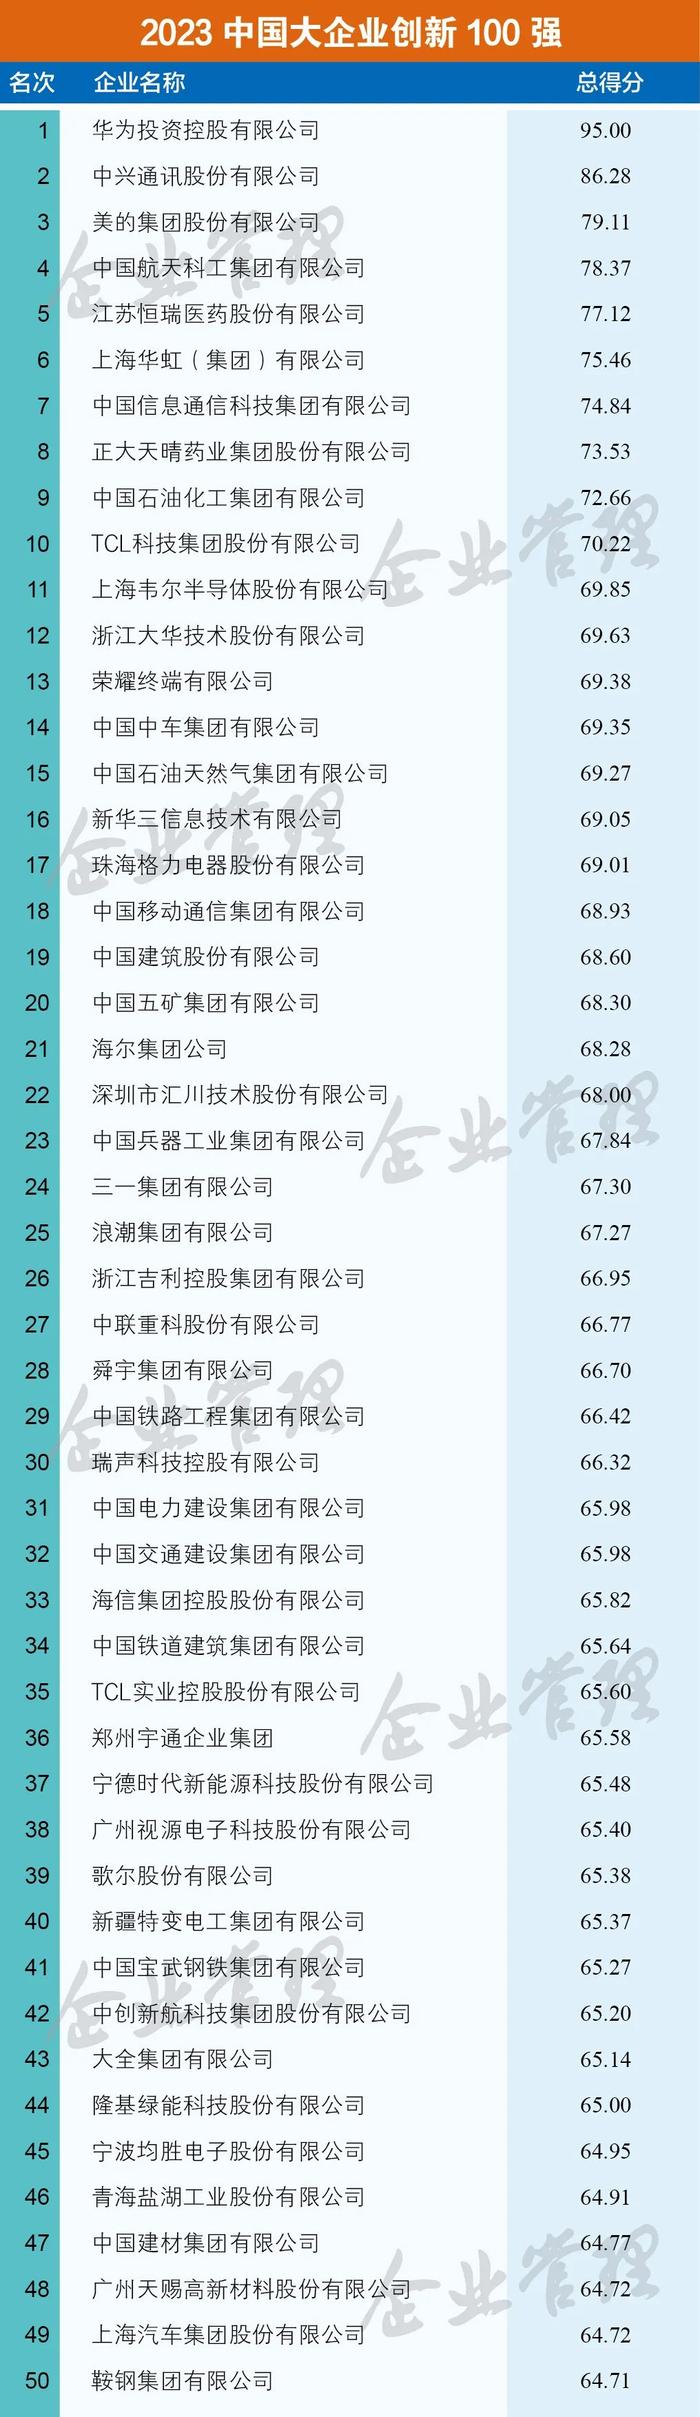 2023中国大企业创新100强名单